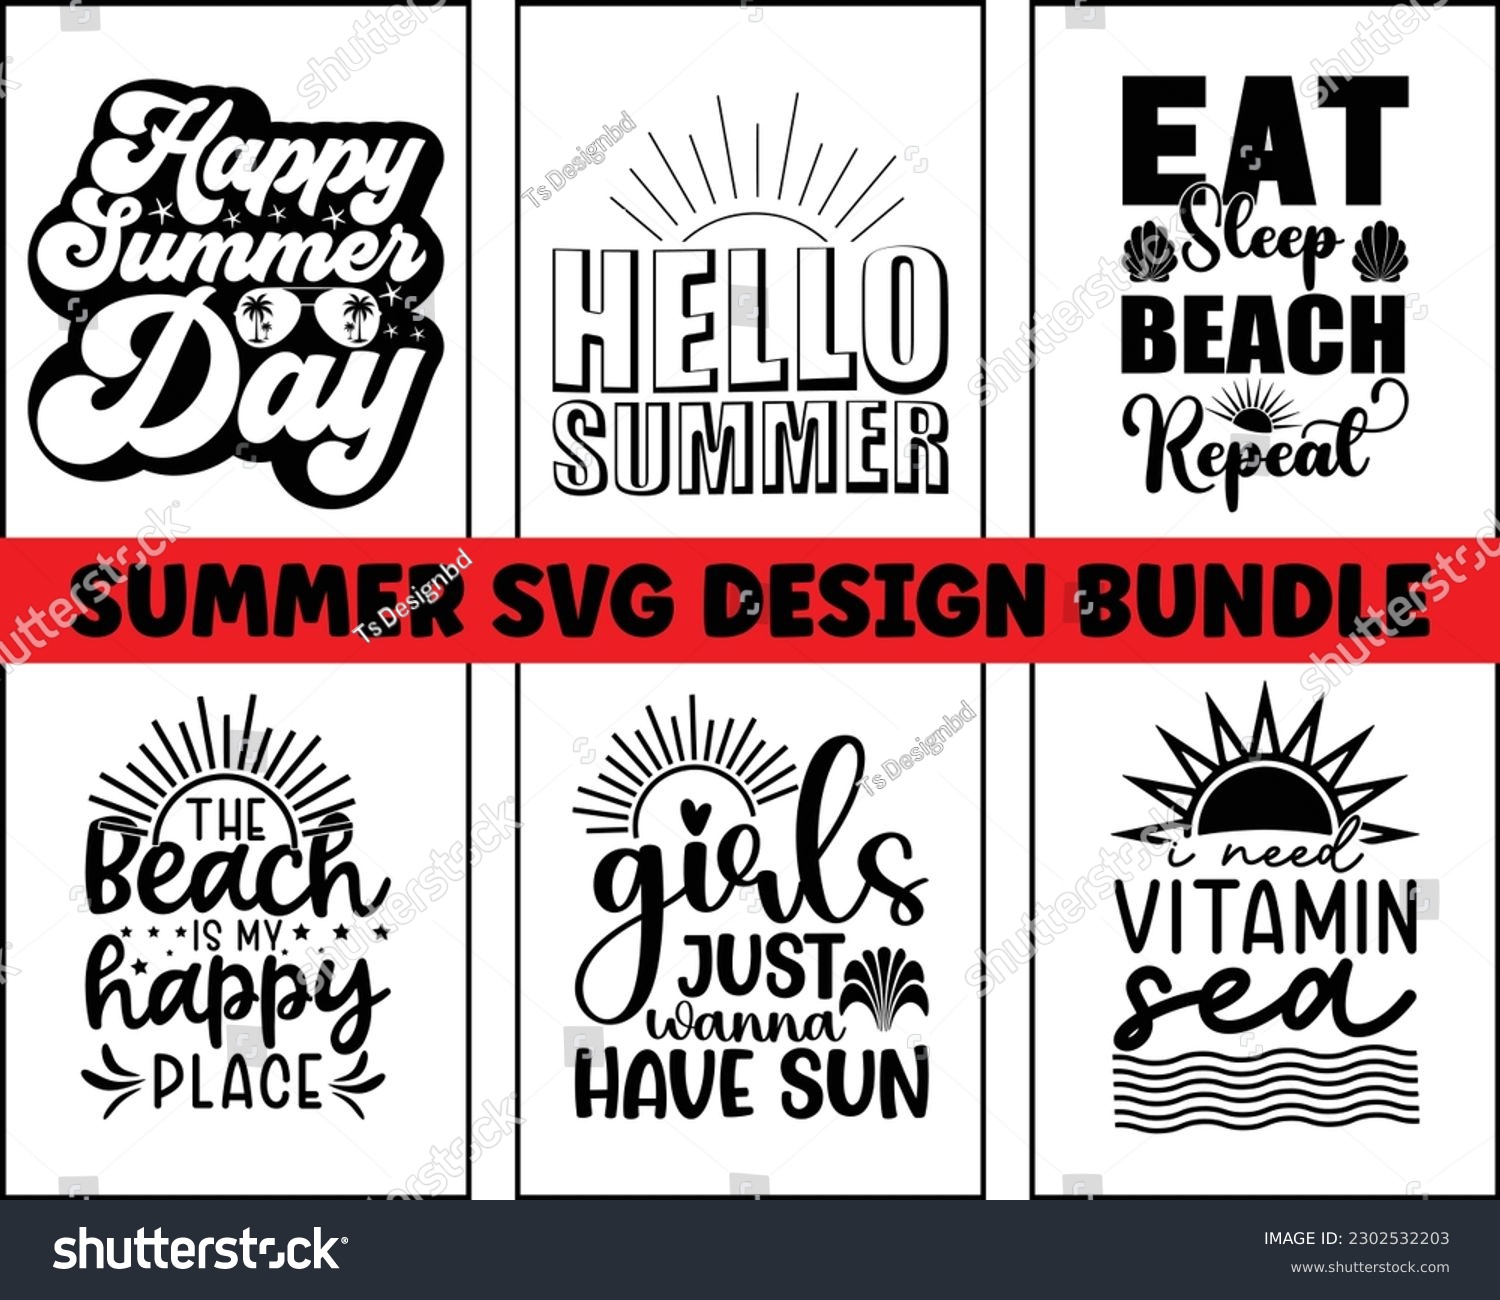 SVG of 
summer SVG design bundle Cut Files,Summer Beach Bundle SVG,Funny Summer quotes SVG cut files ,Hello Summer quotes t shirt designs bundle, beach cut files svg